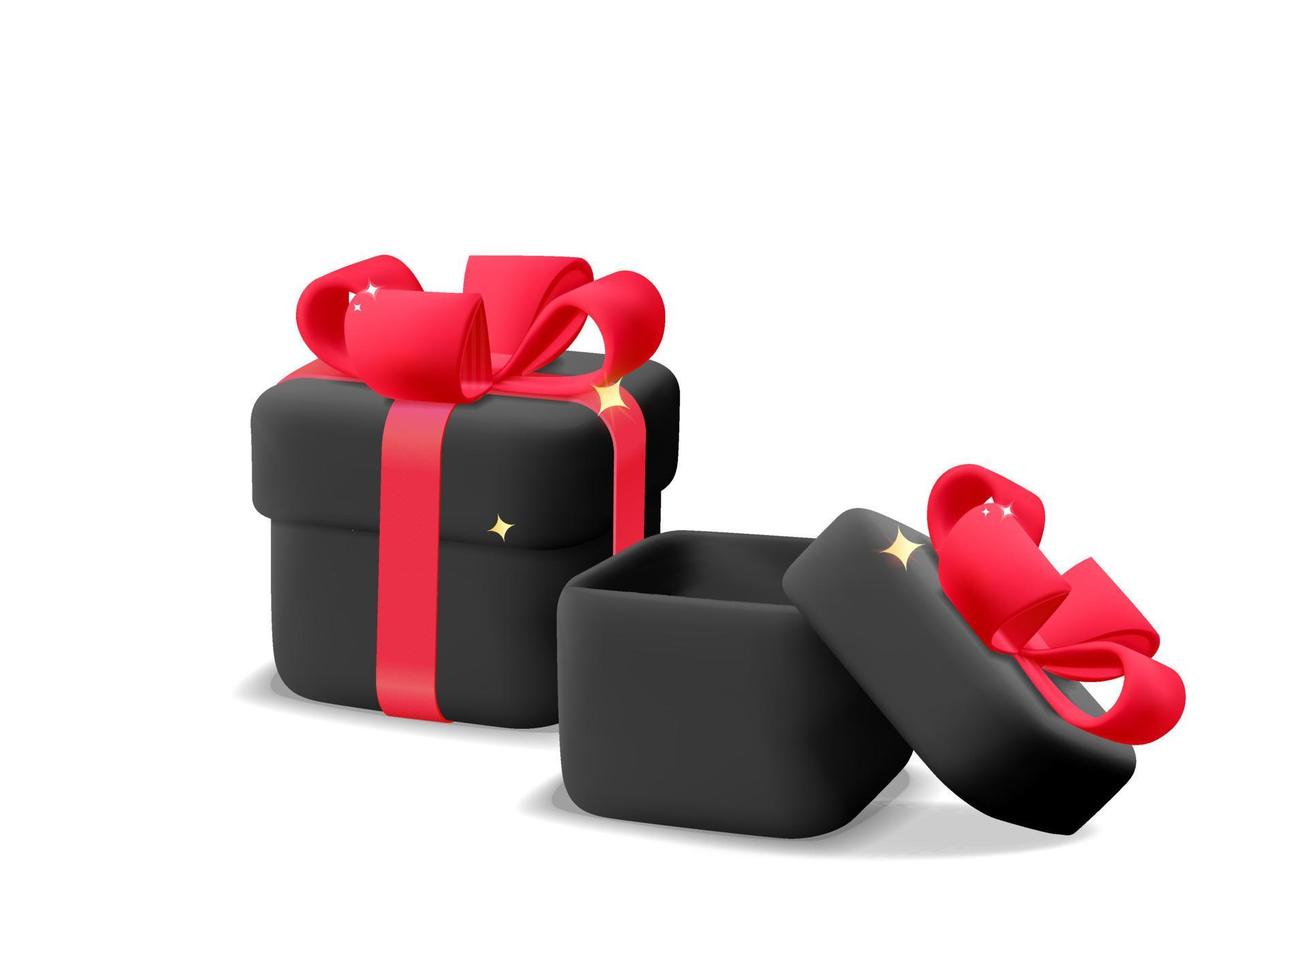 3d vecteur noir fermé et ouvert cadeau carré présent boîte avec ruban rouge arc dessin animé rendu icône design